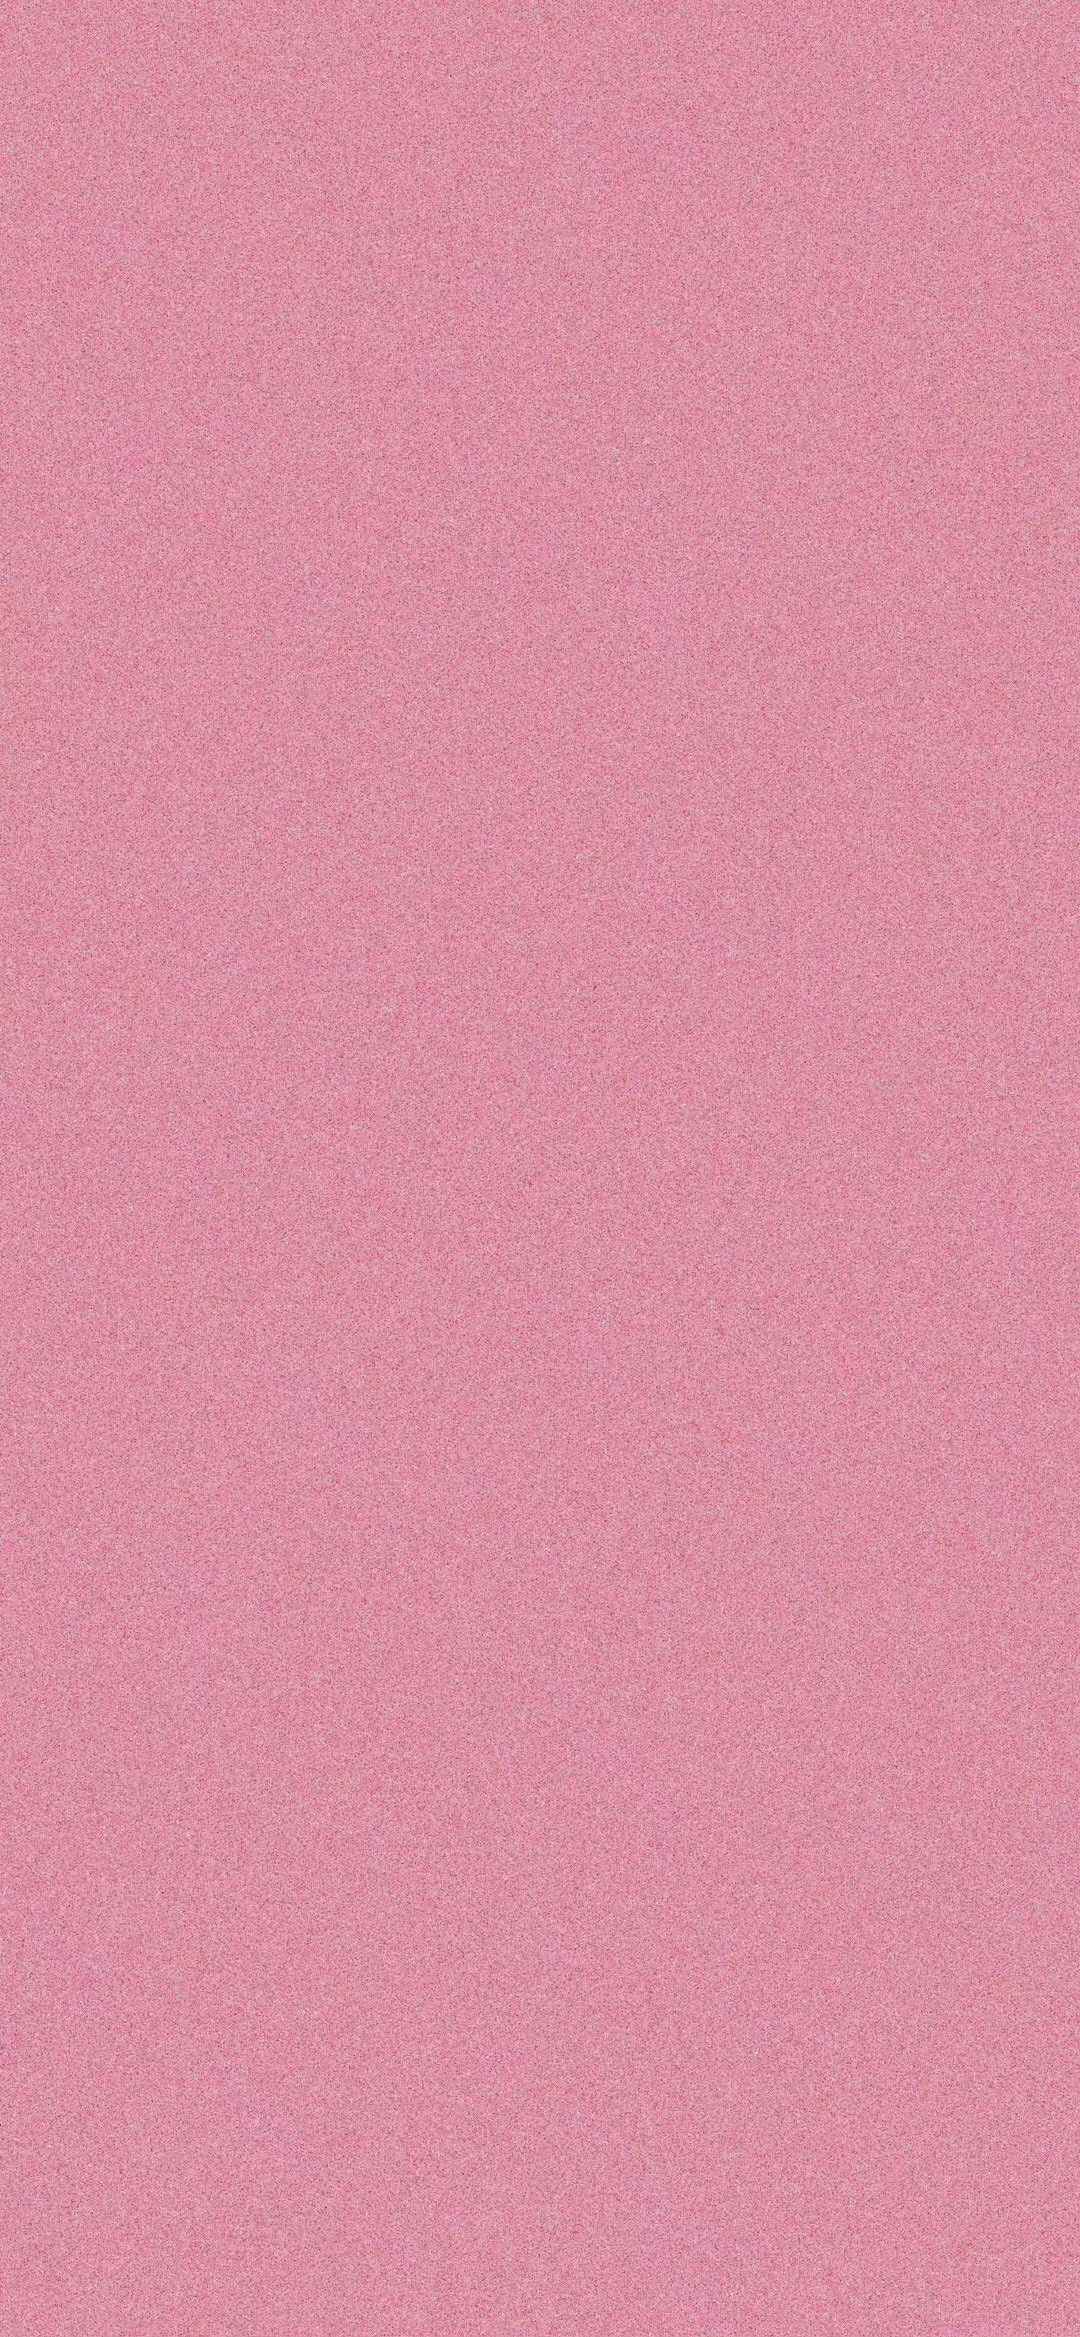 轻磨砂质感的纯粉色高清壁纸